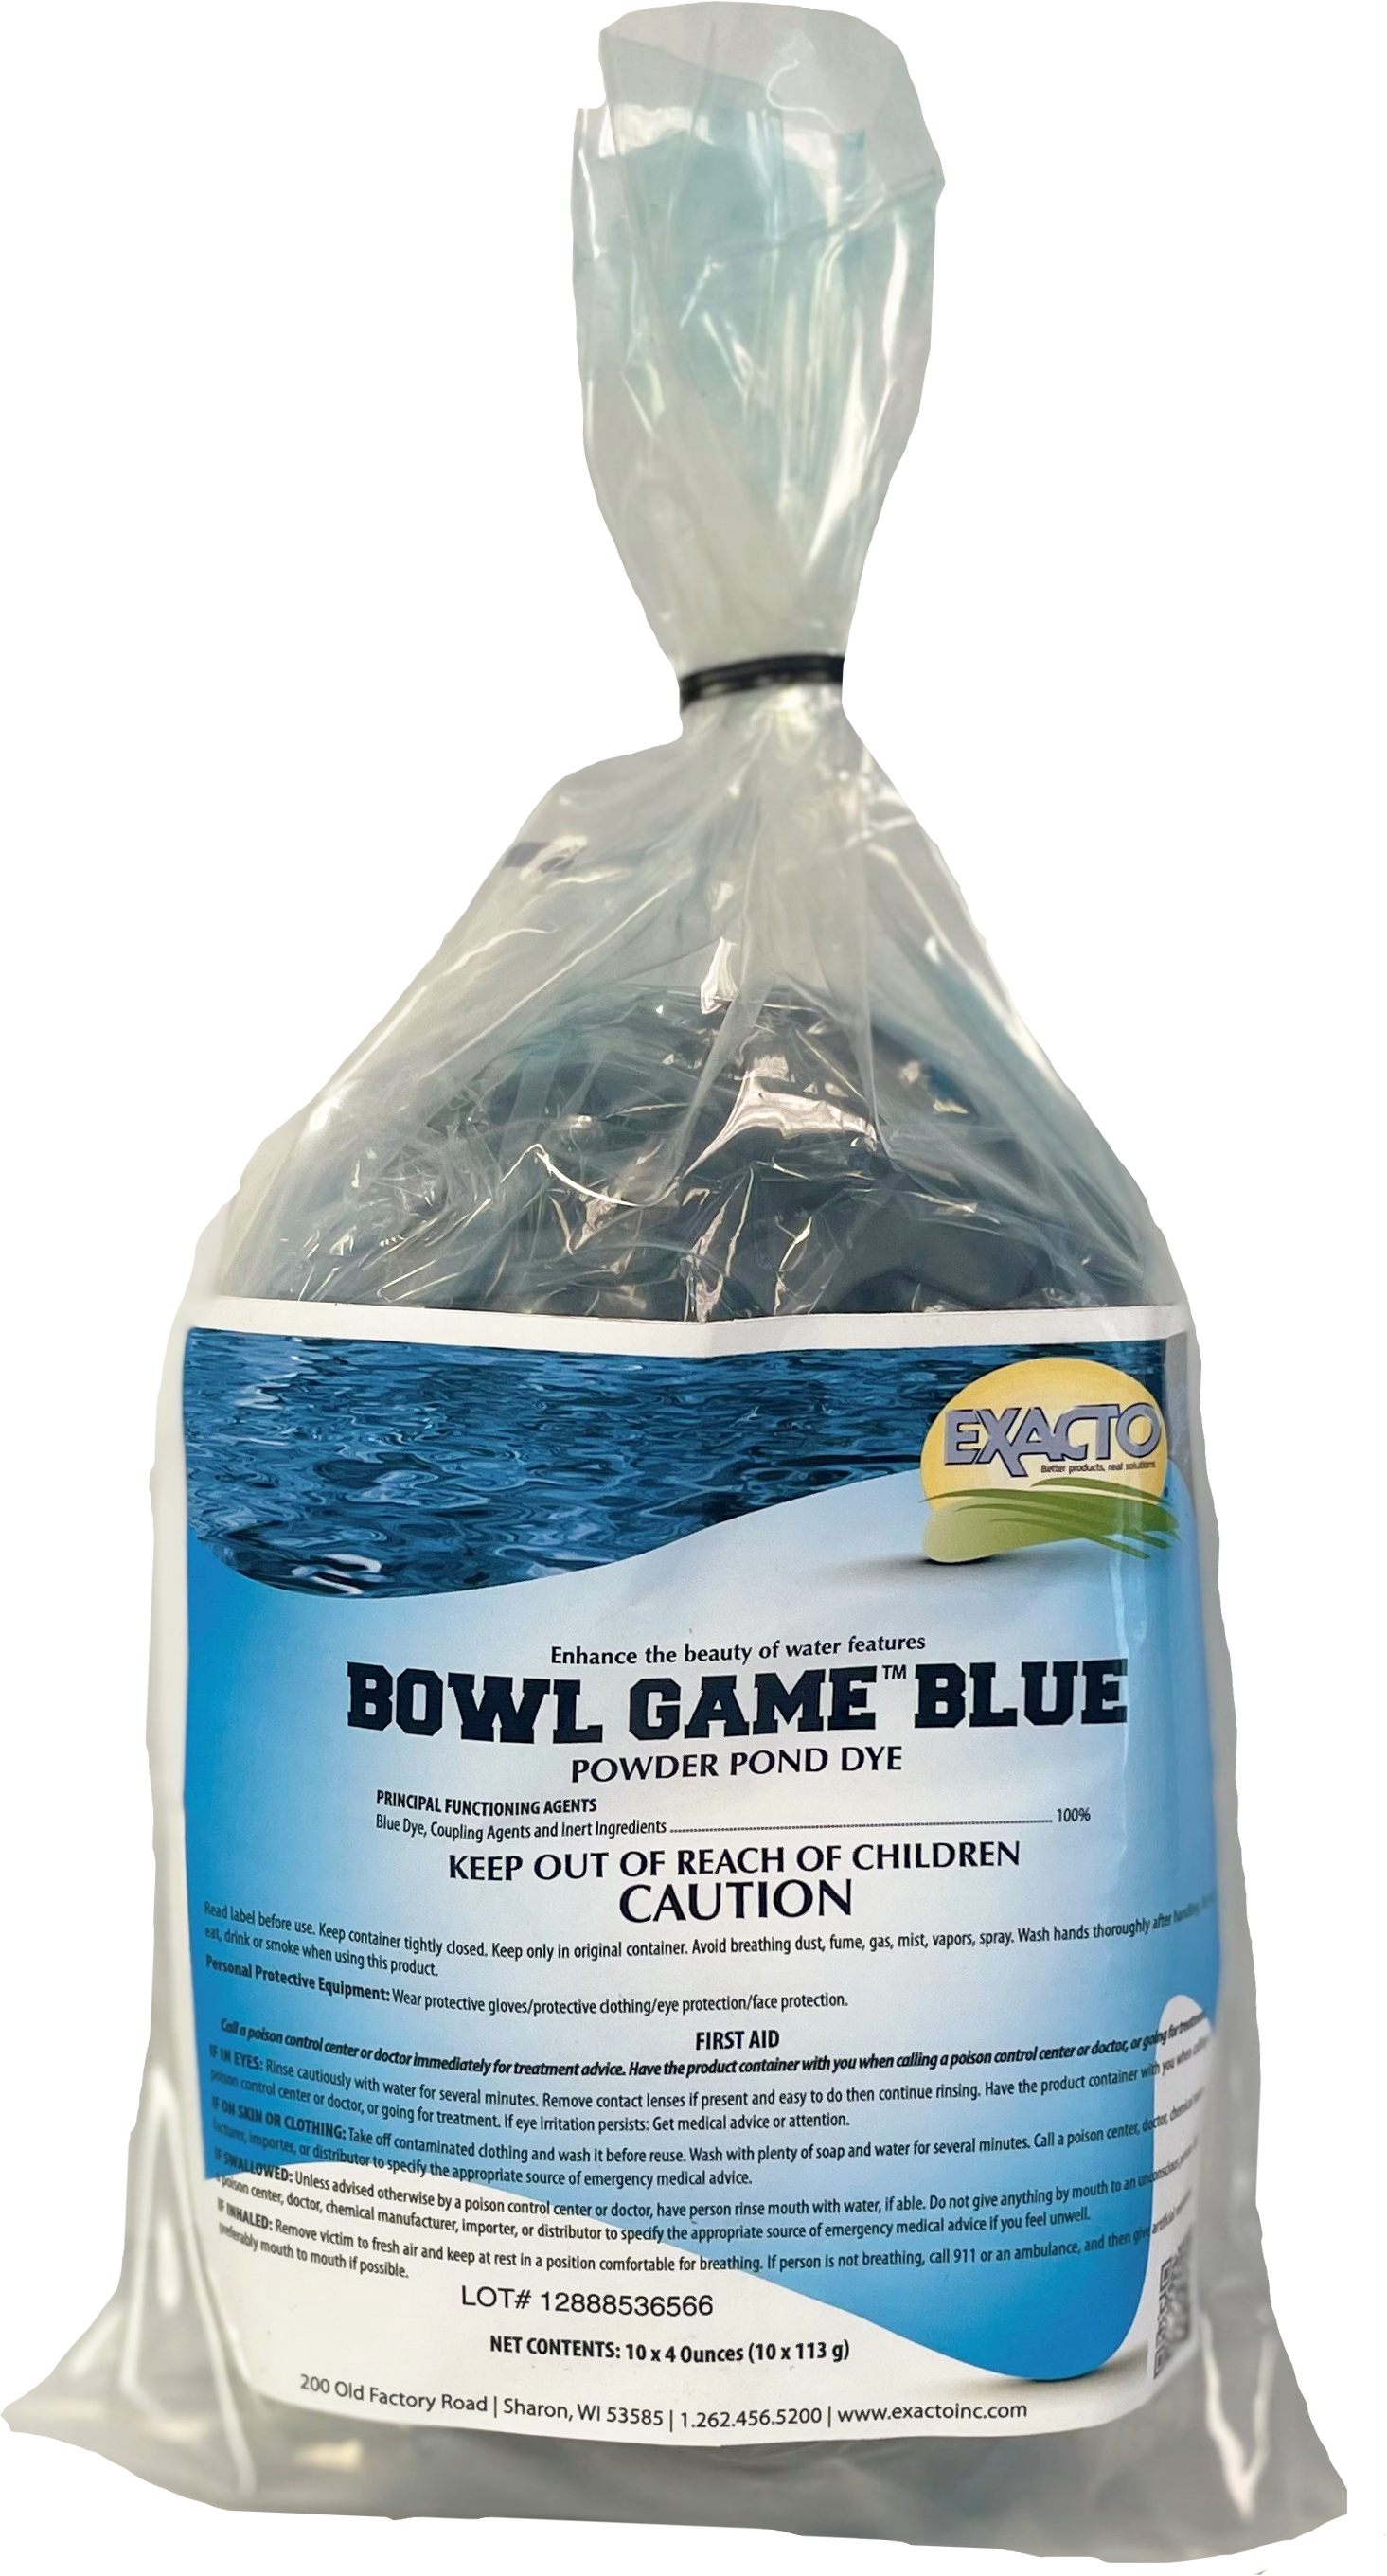 Bowl Game Pond Dye Blue 10 x 4oz bags - 4 bags per case - Water Treatment